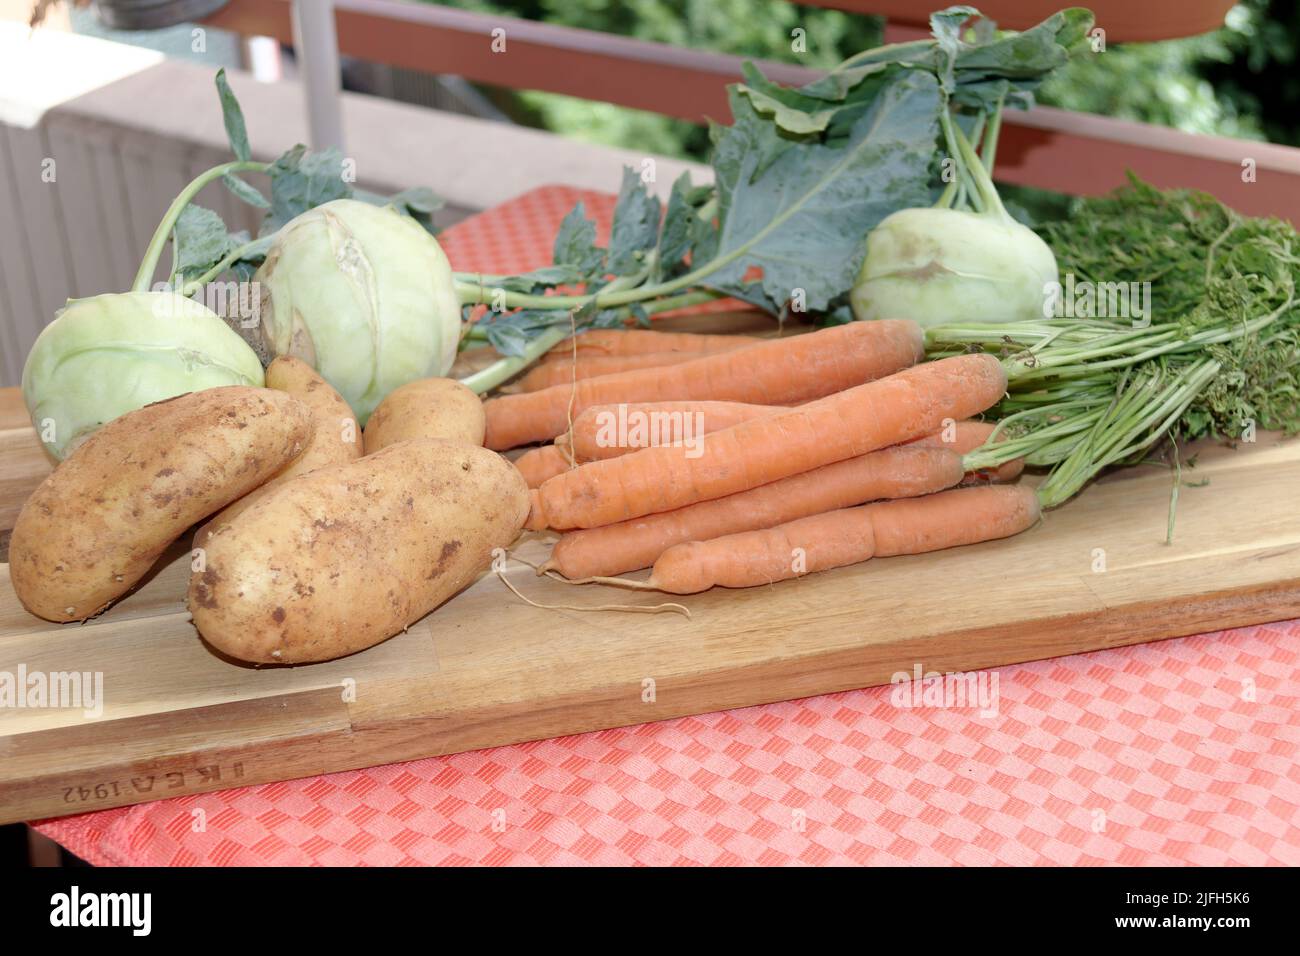 Vendemmiate le verdure fresche del giardino di casa: Patate, sudore, rapa, (Kohlrabi) e carote. Foto Stock